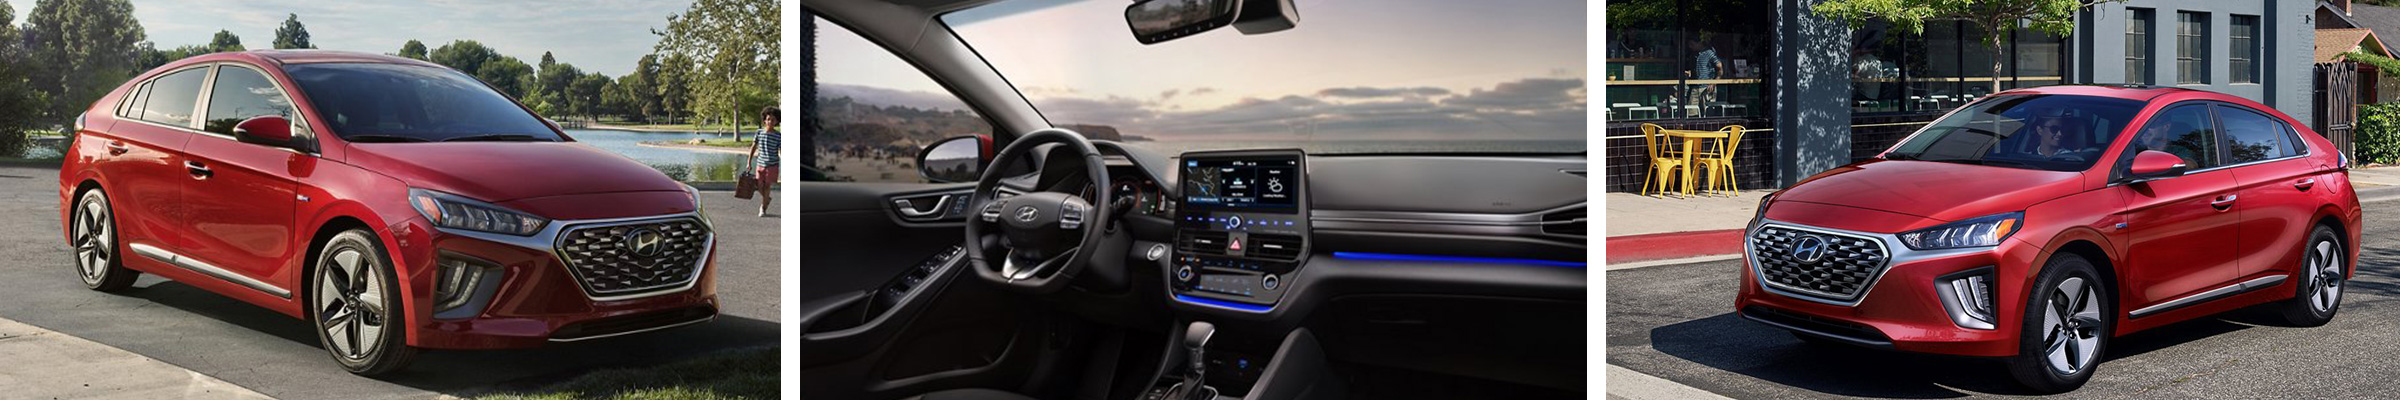 2020 Hyundai Ioniq Hybrid For Sale Dearborn MI | Detroit